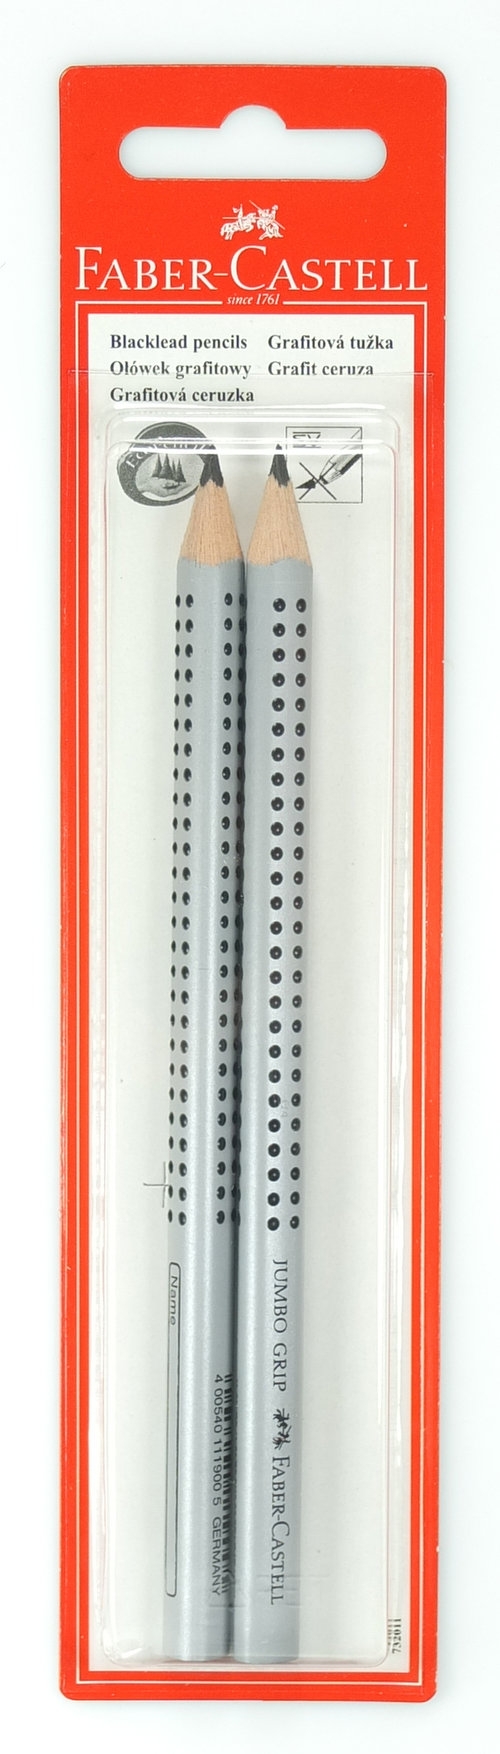 Ołówek Jumbo Grip B 2 sztuki (263230)